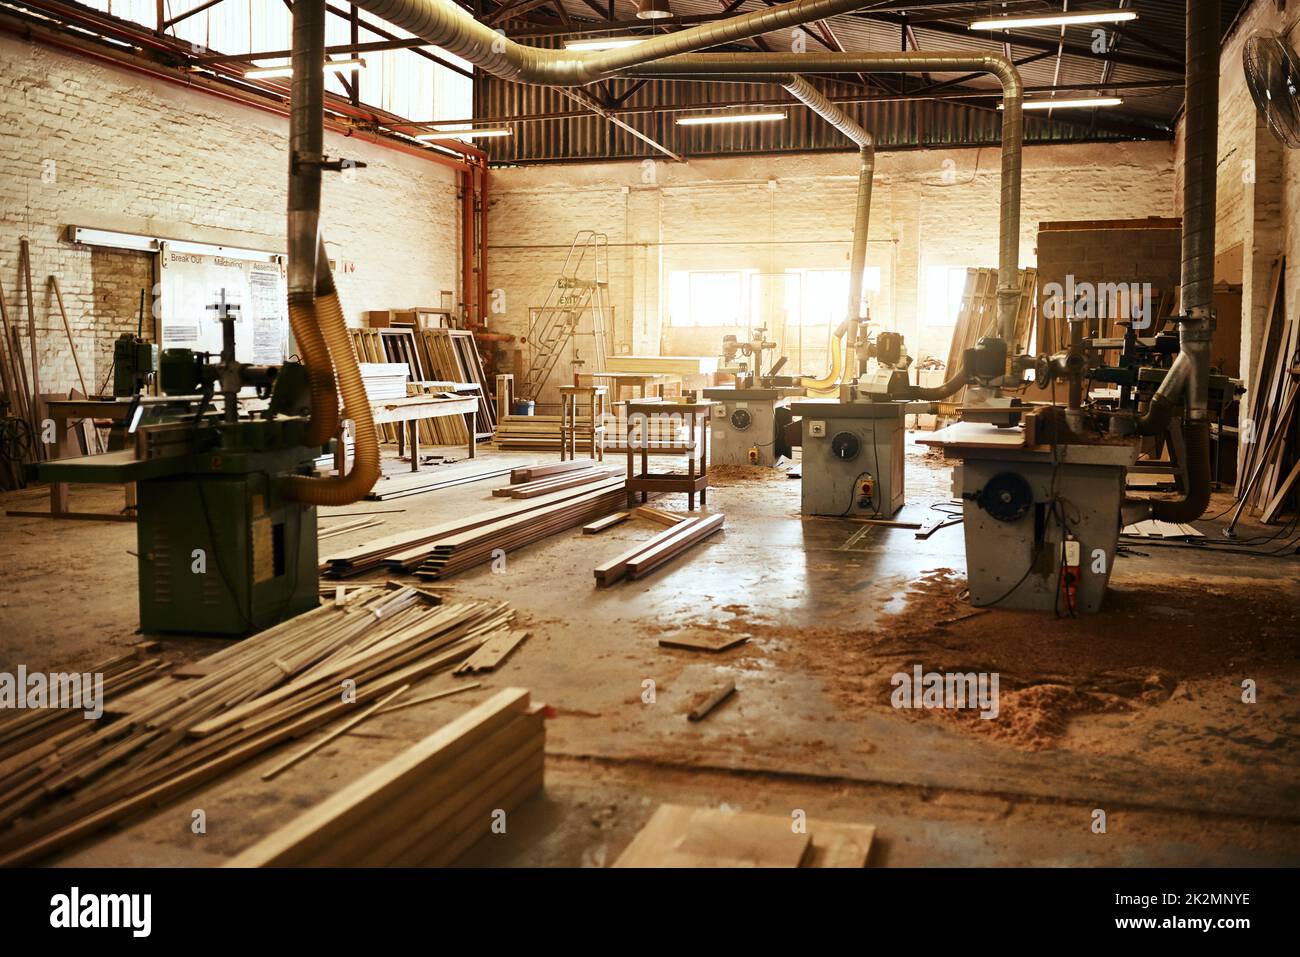 Lasciate che il lavoro inizi. Foto di vita del macchinario e mucchi di legno all'interno di un laboratorio di carpenteria. Foto Stock